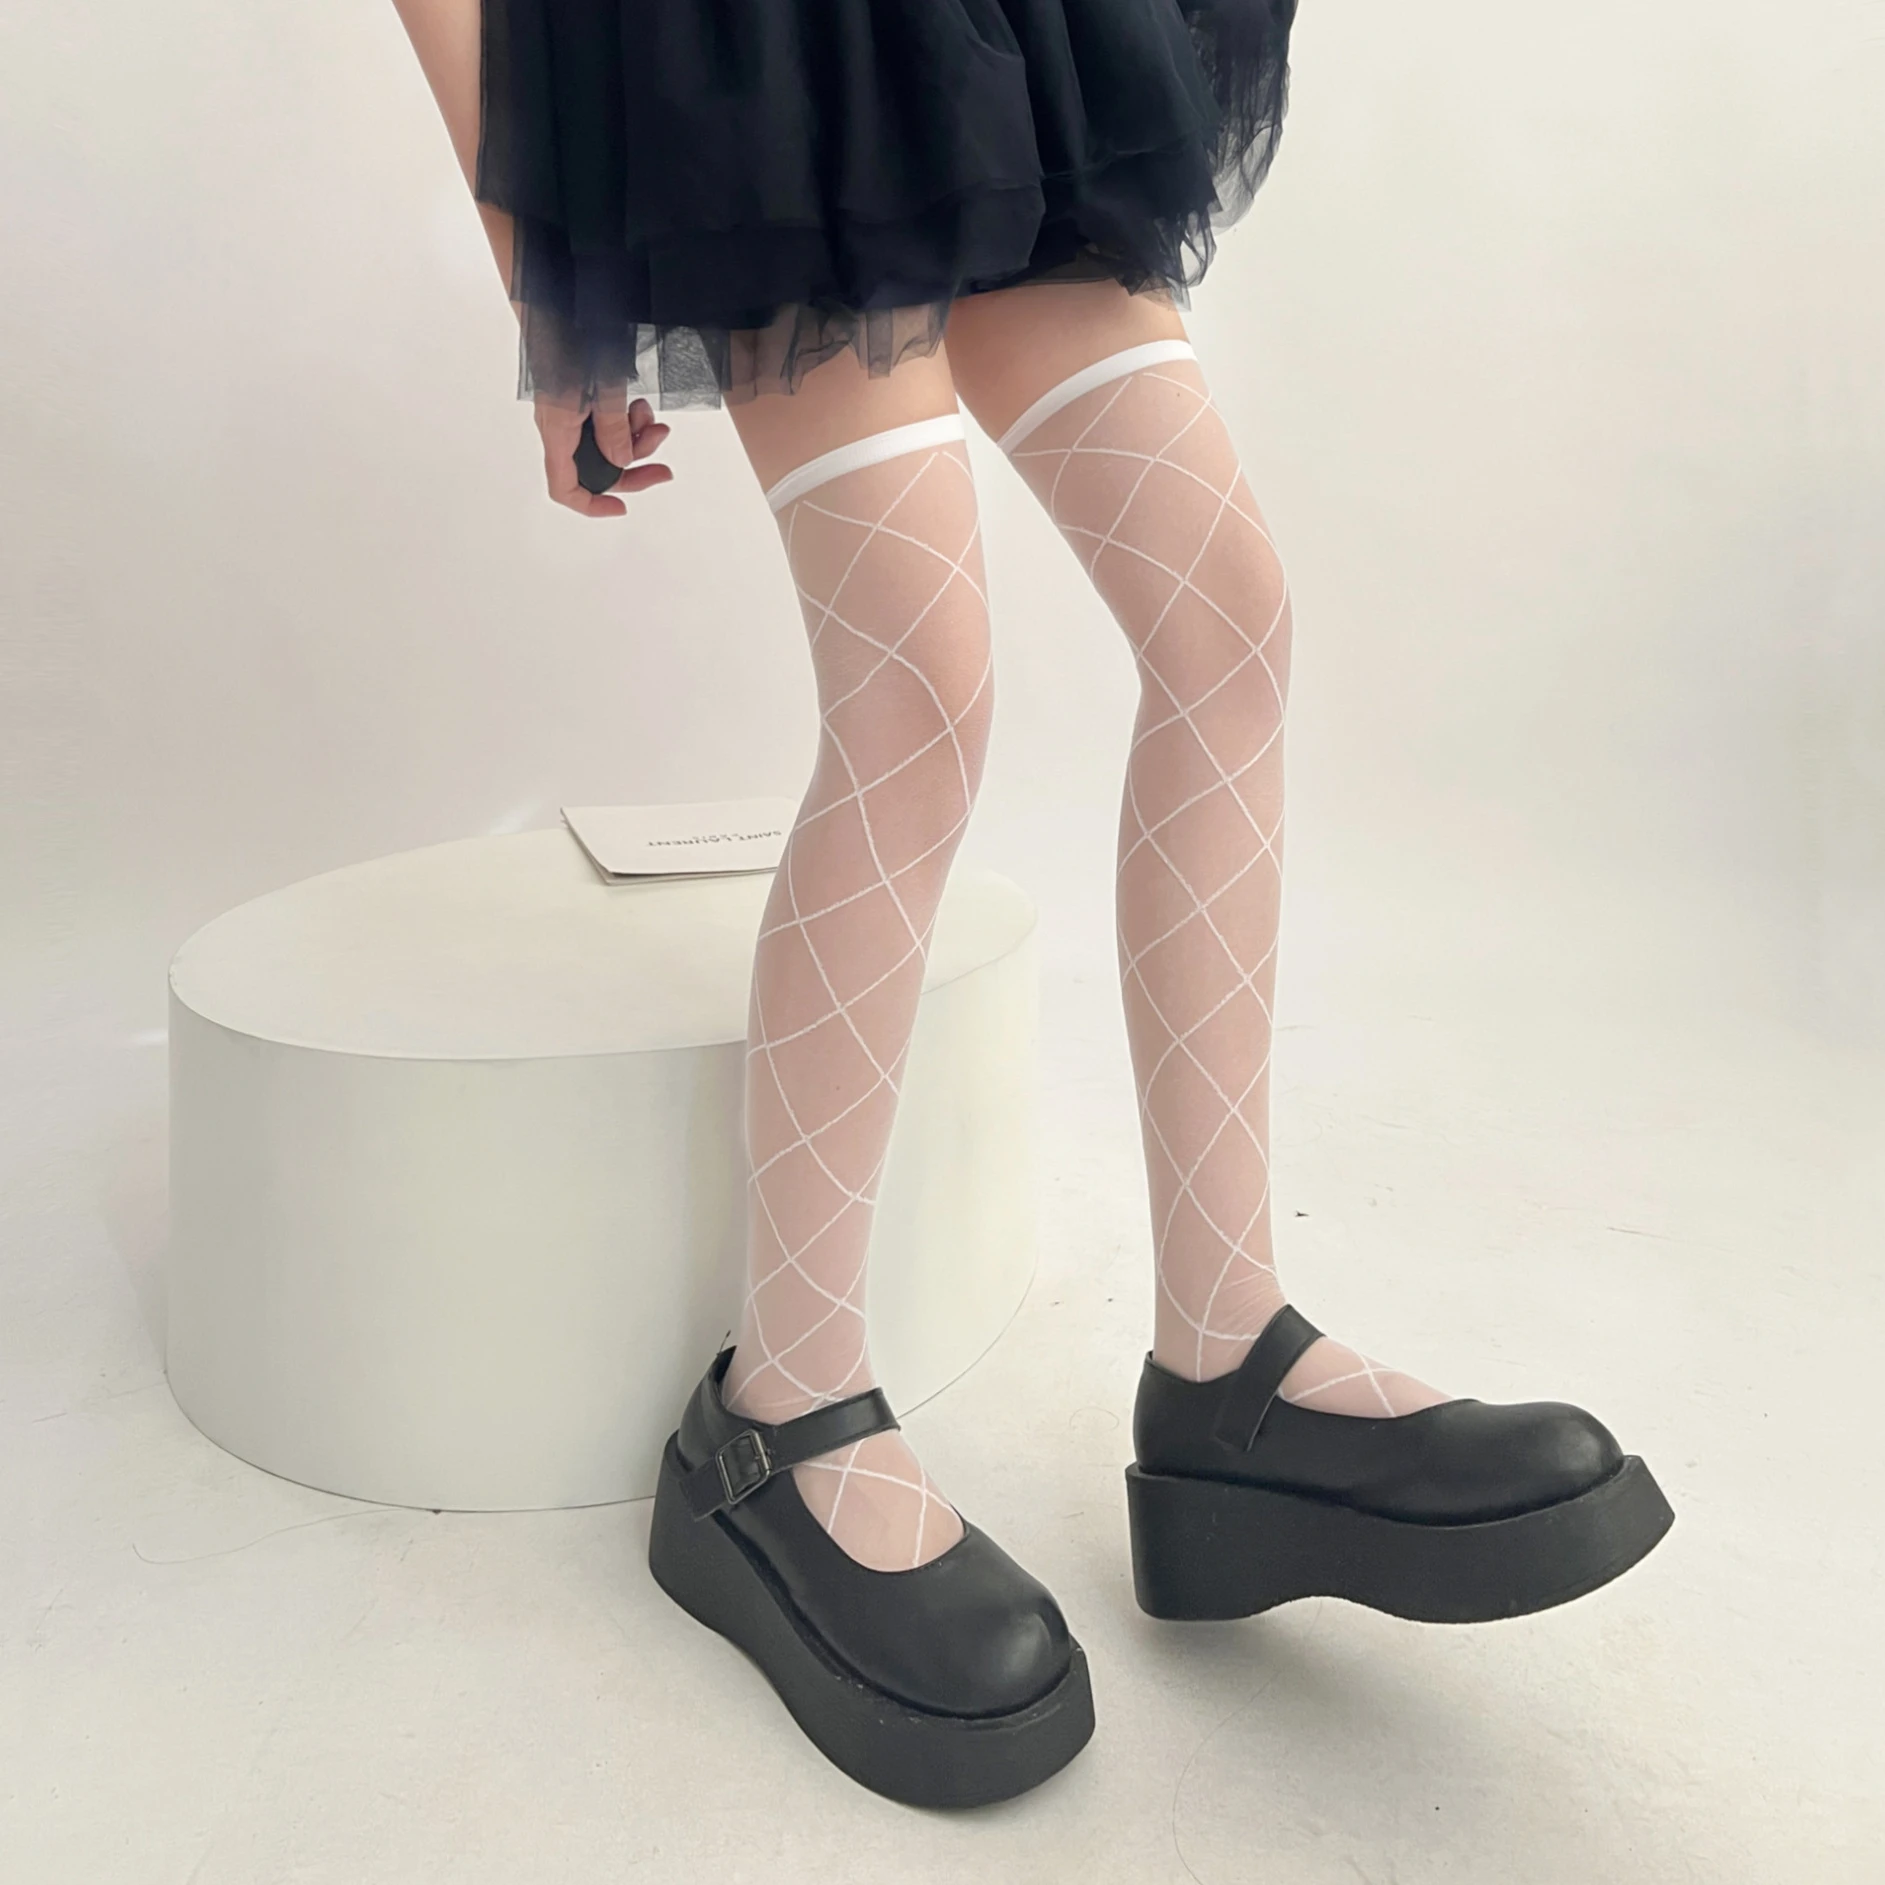 

Japanese JK Girl Cross Line Socks New Diamond Grid Stockings for Women Lingerie Lolita Costume Black White Silky sheer Stocking